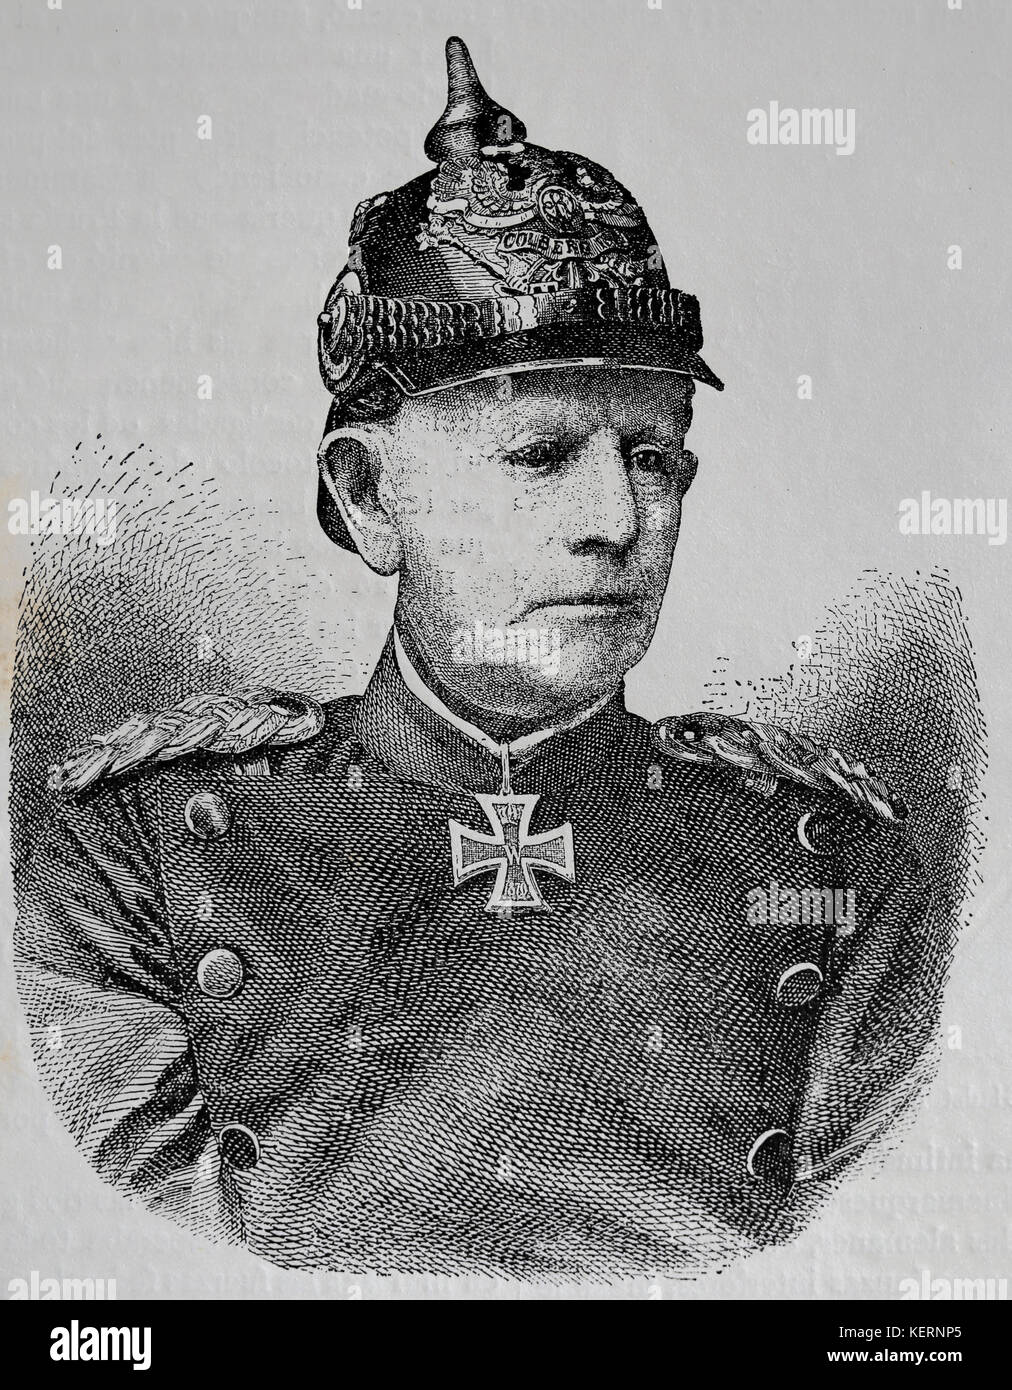 Helmuth von Moltke l'ancien (1800-1891), le maréchal allemand.. chef d'état-major de l'armée prussienne. gravure, nuestro siglo, 1883, Barcelone, Espagne. Banque D'Images